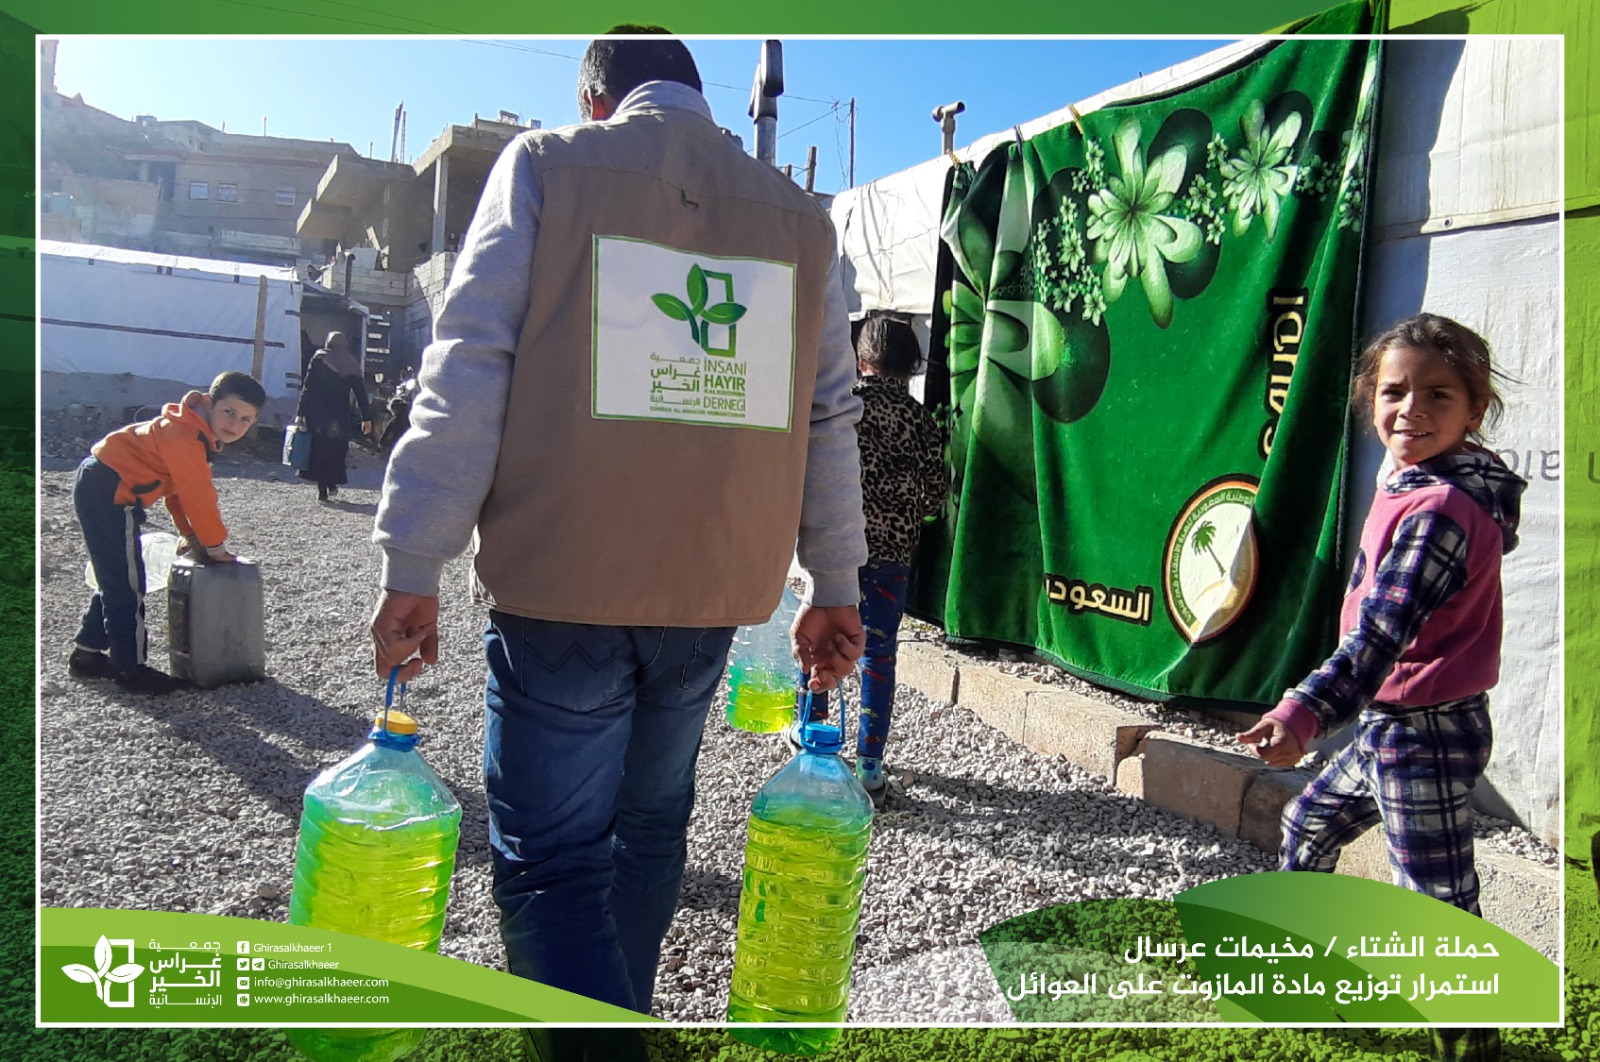 حملة شتاء دافئ6 توزيع مادة المازوت في مخيمات عرسال 2019-2020